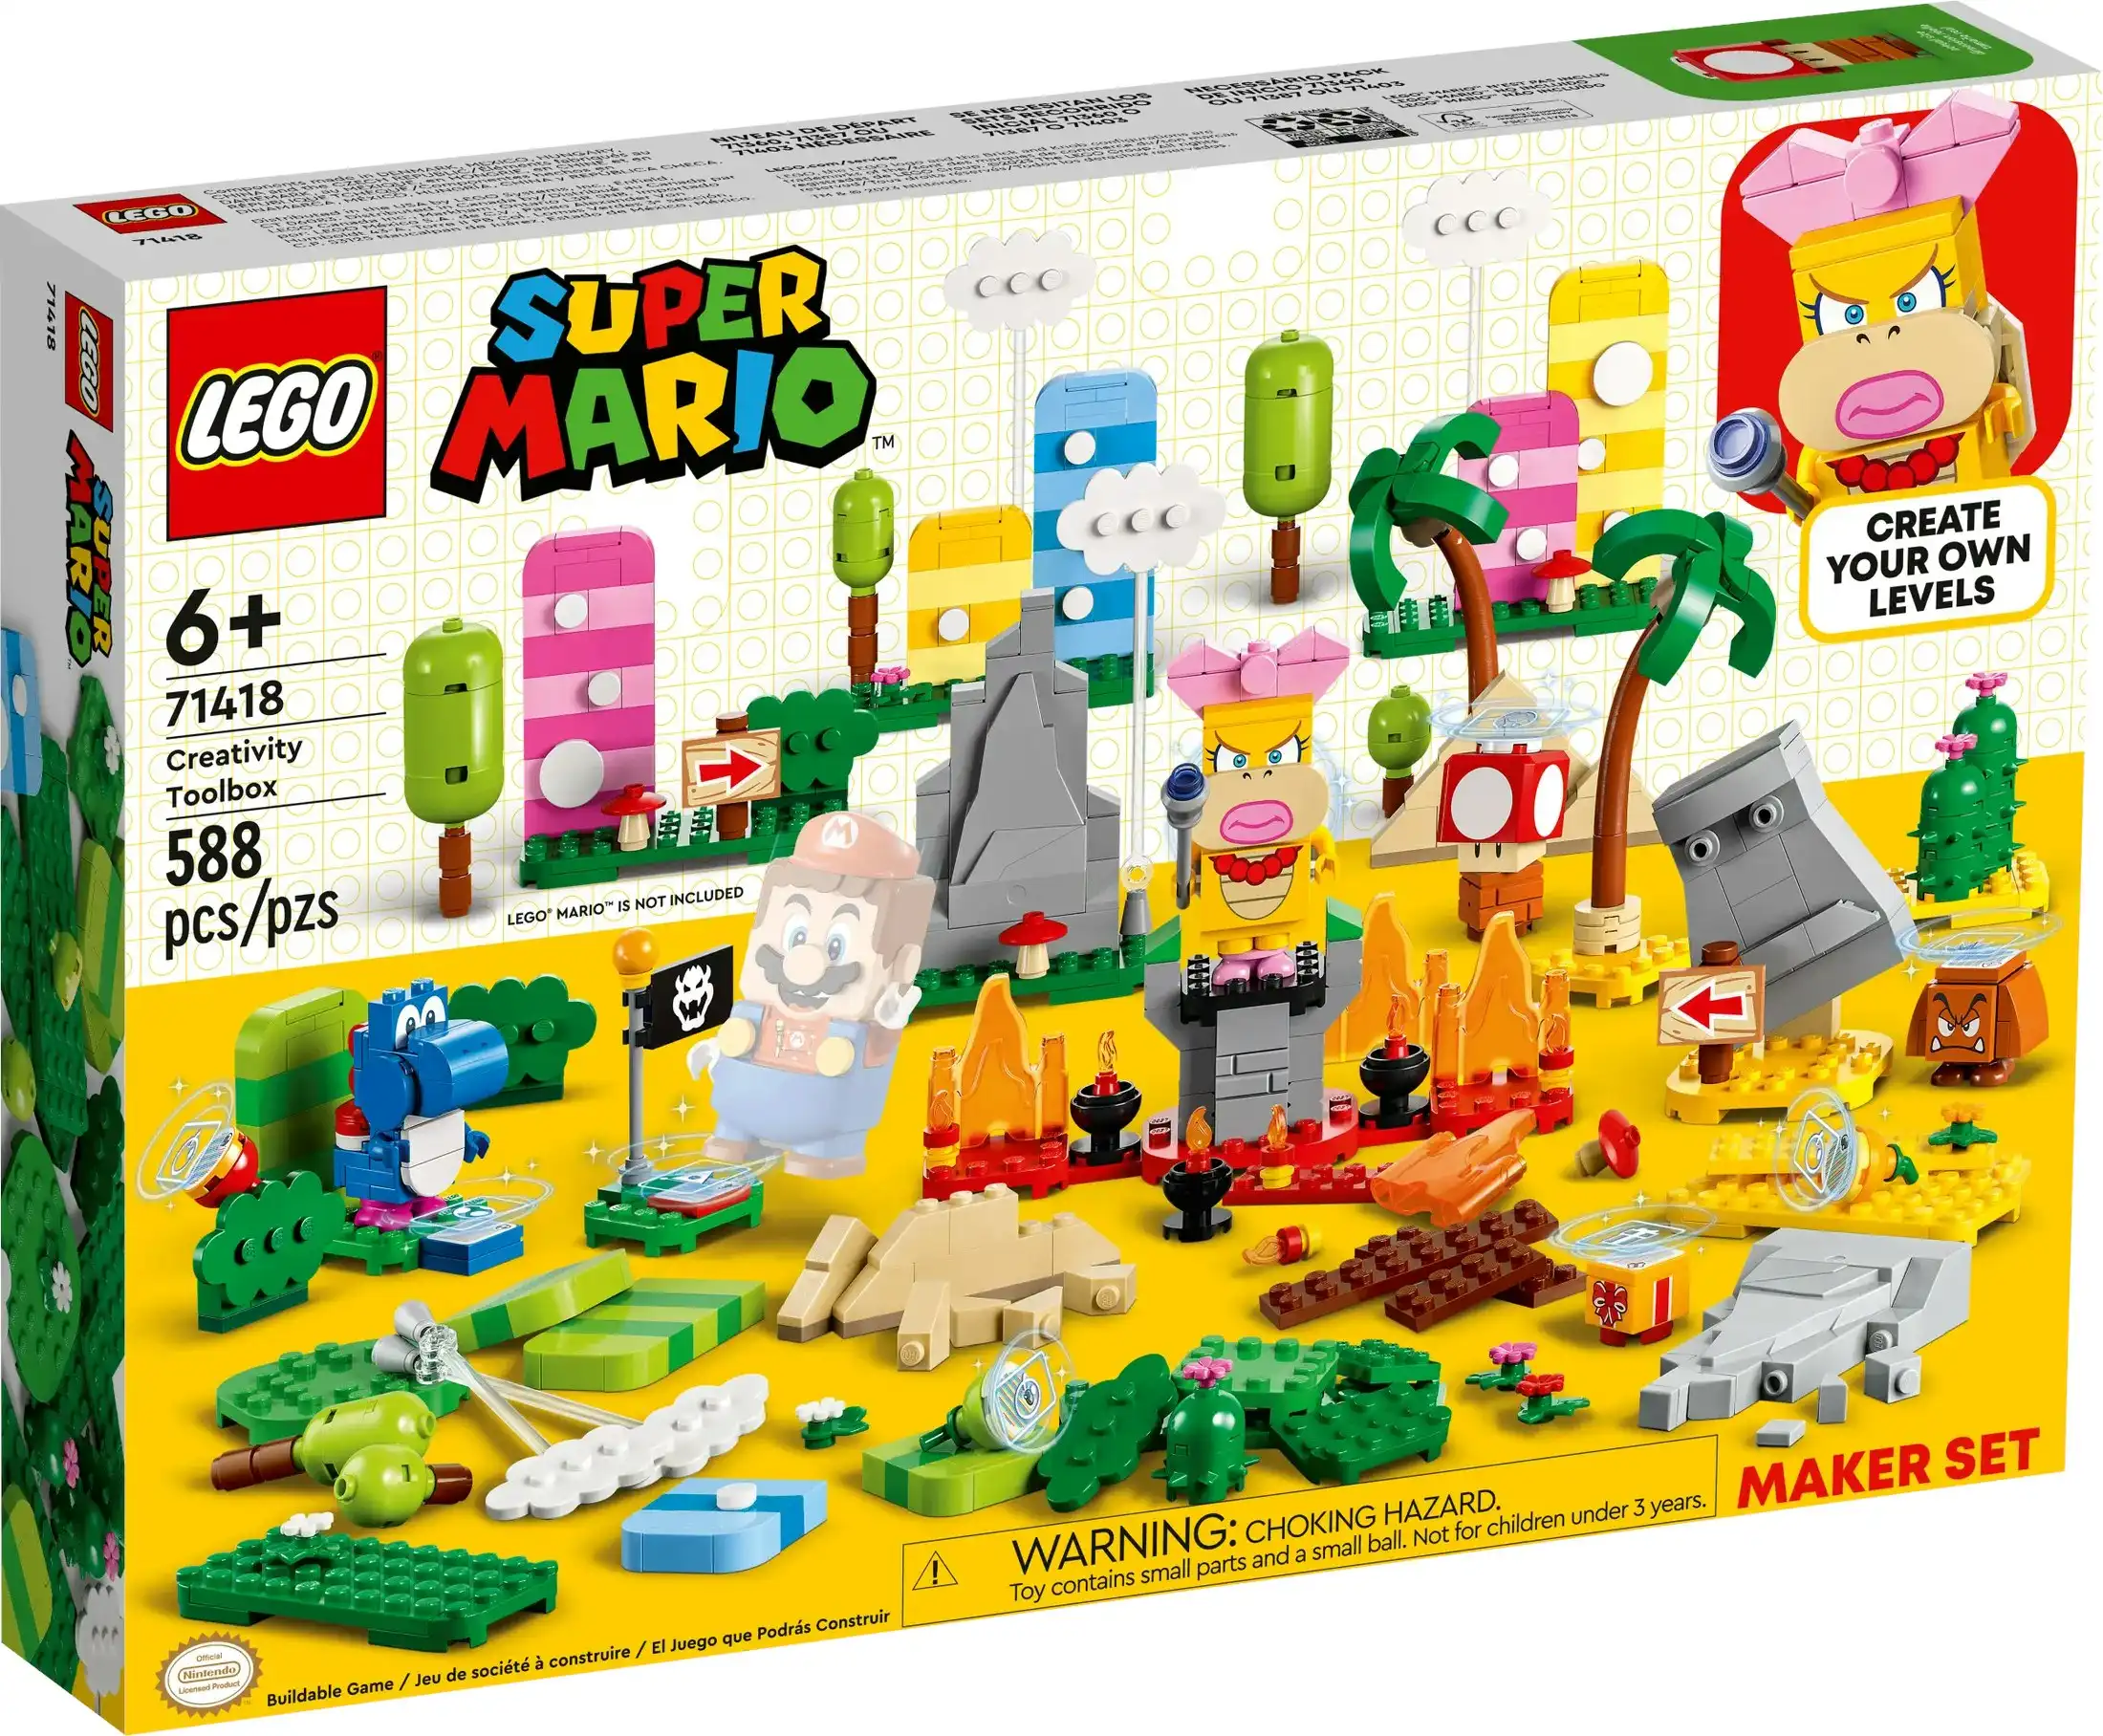 LEGO 71418 Creativity Toolbox Maker Set - Super Mario